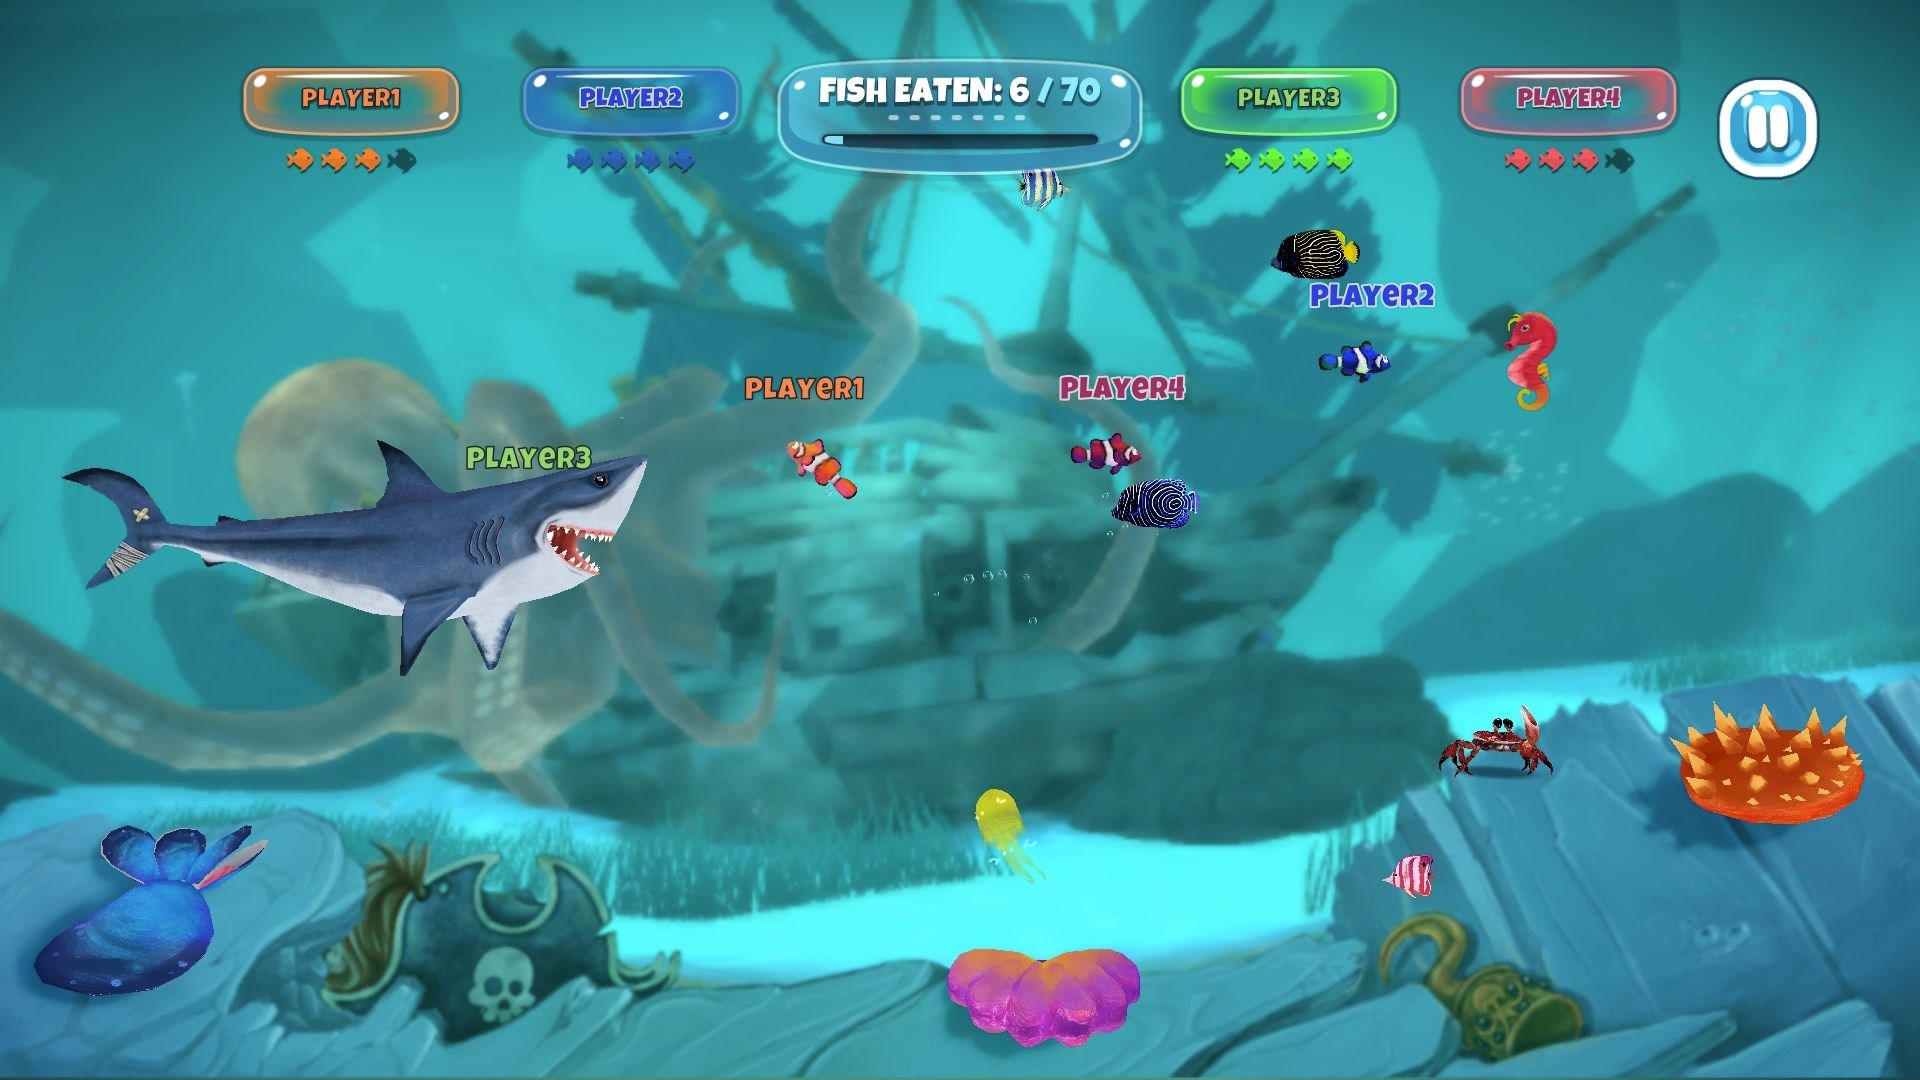 мини акула в игре terraria фото 28